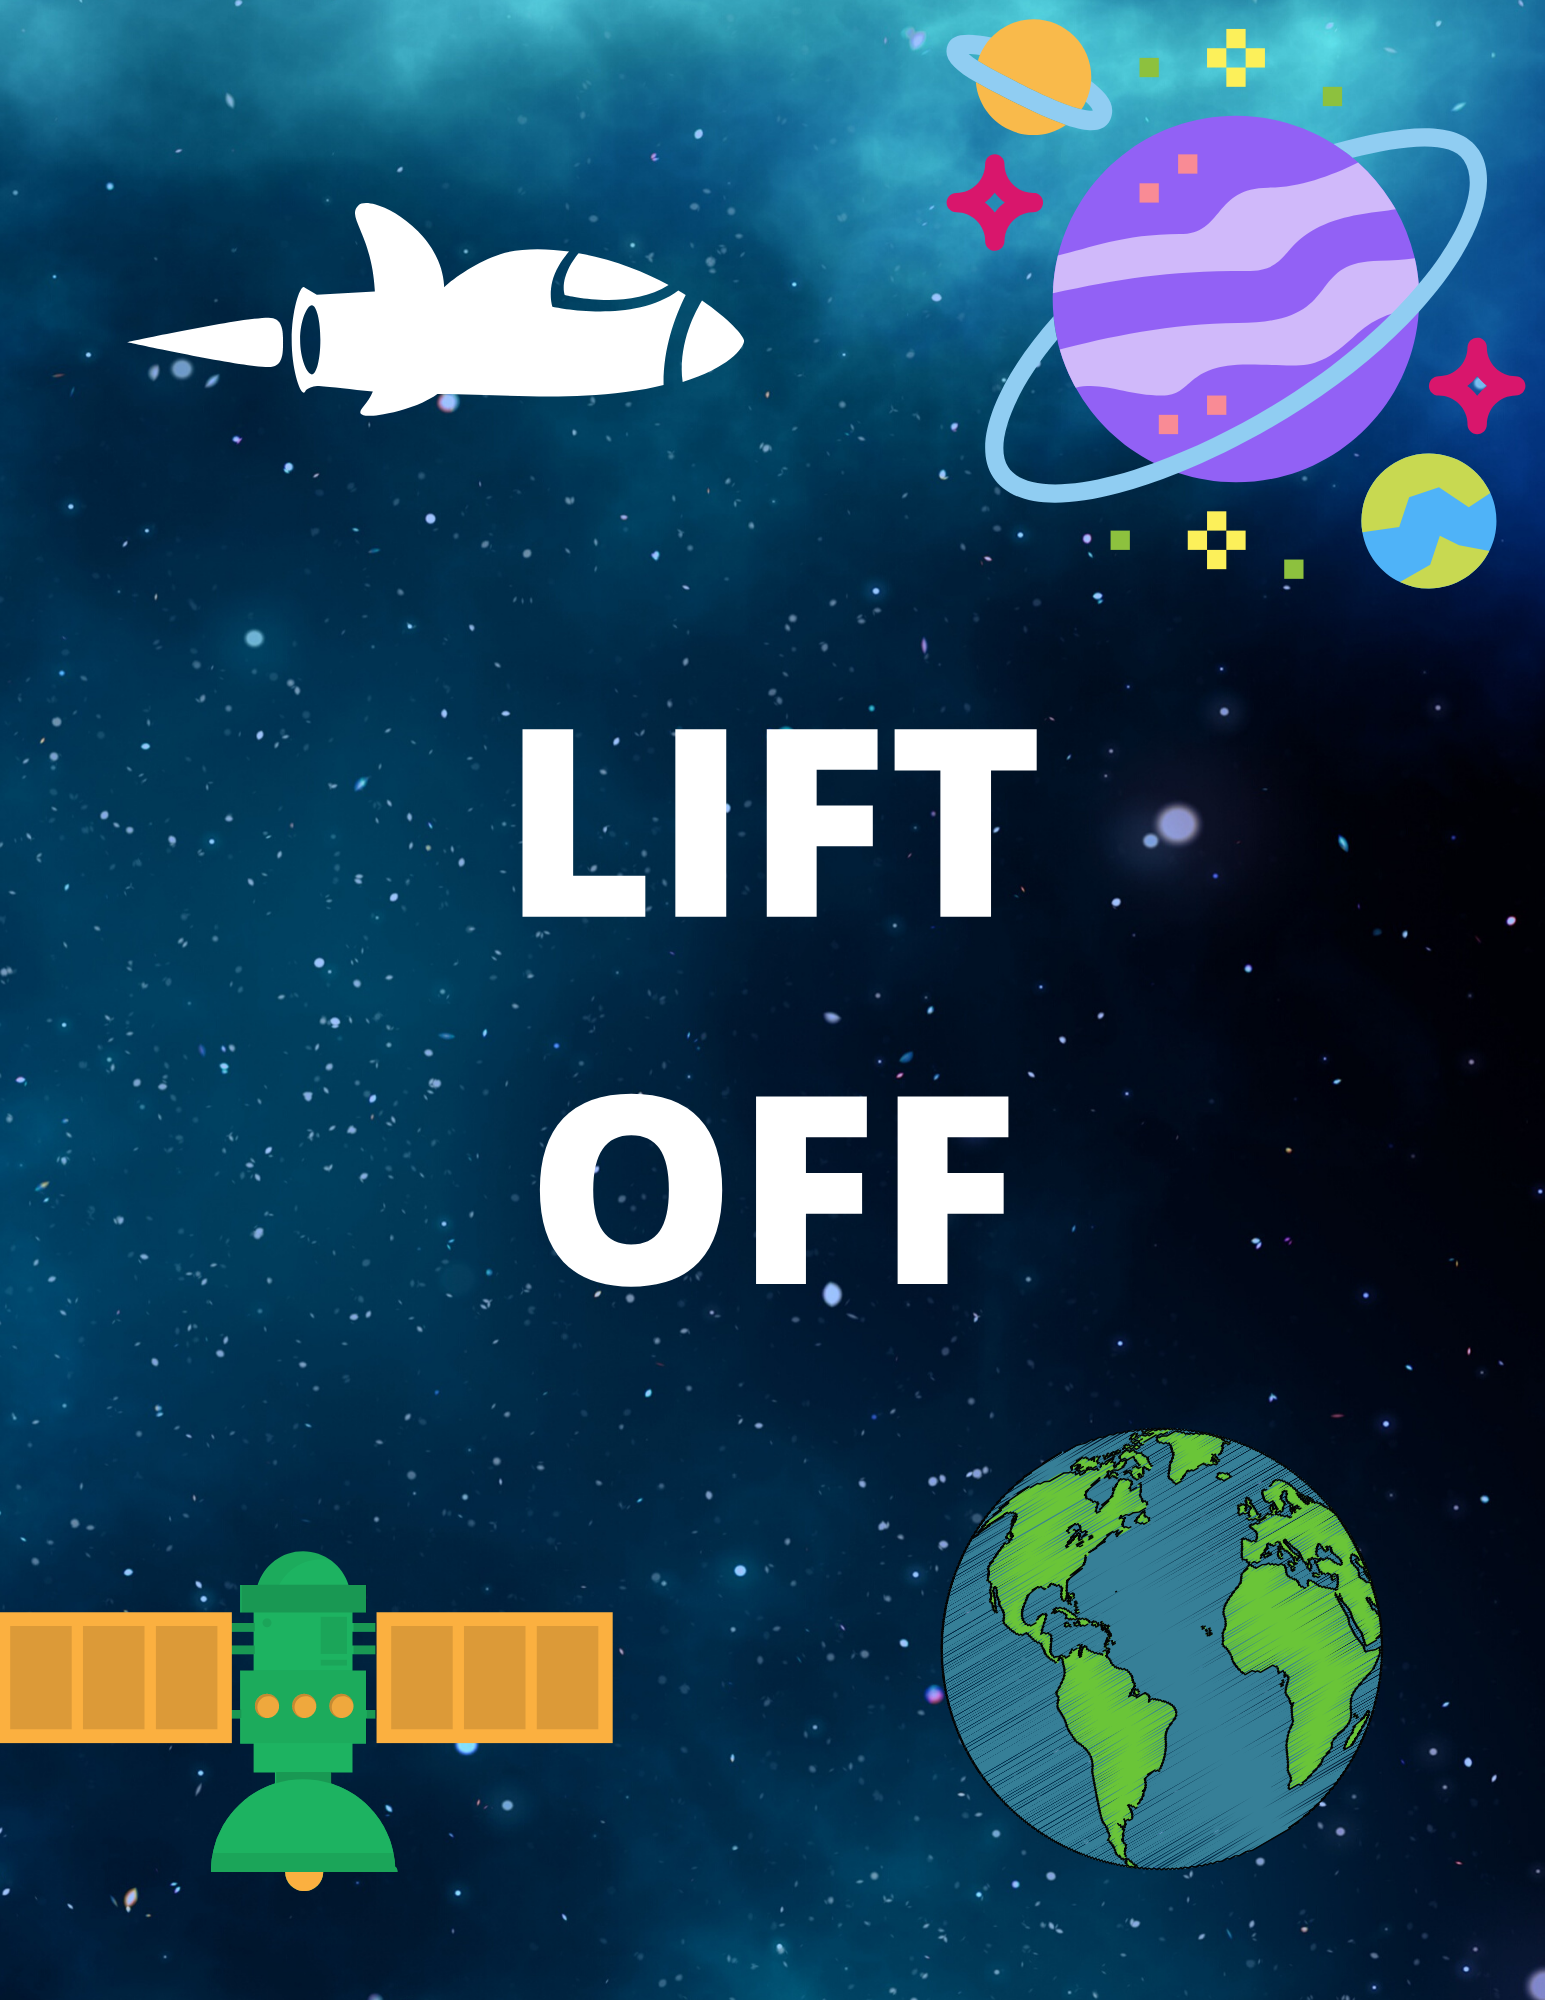 lift off